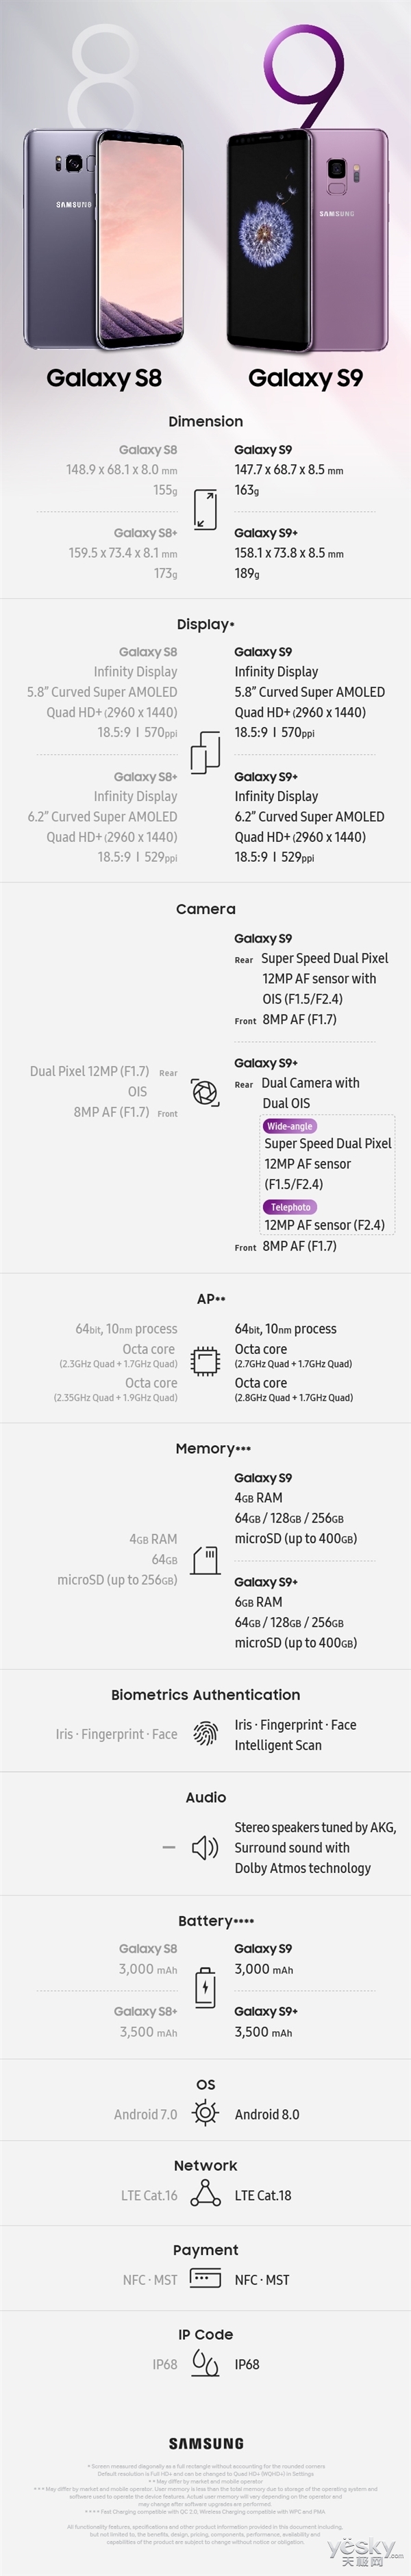 一张图看懂三星Galaxy S9与S8系列的区别